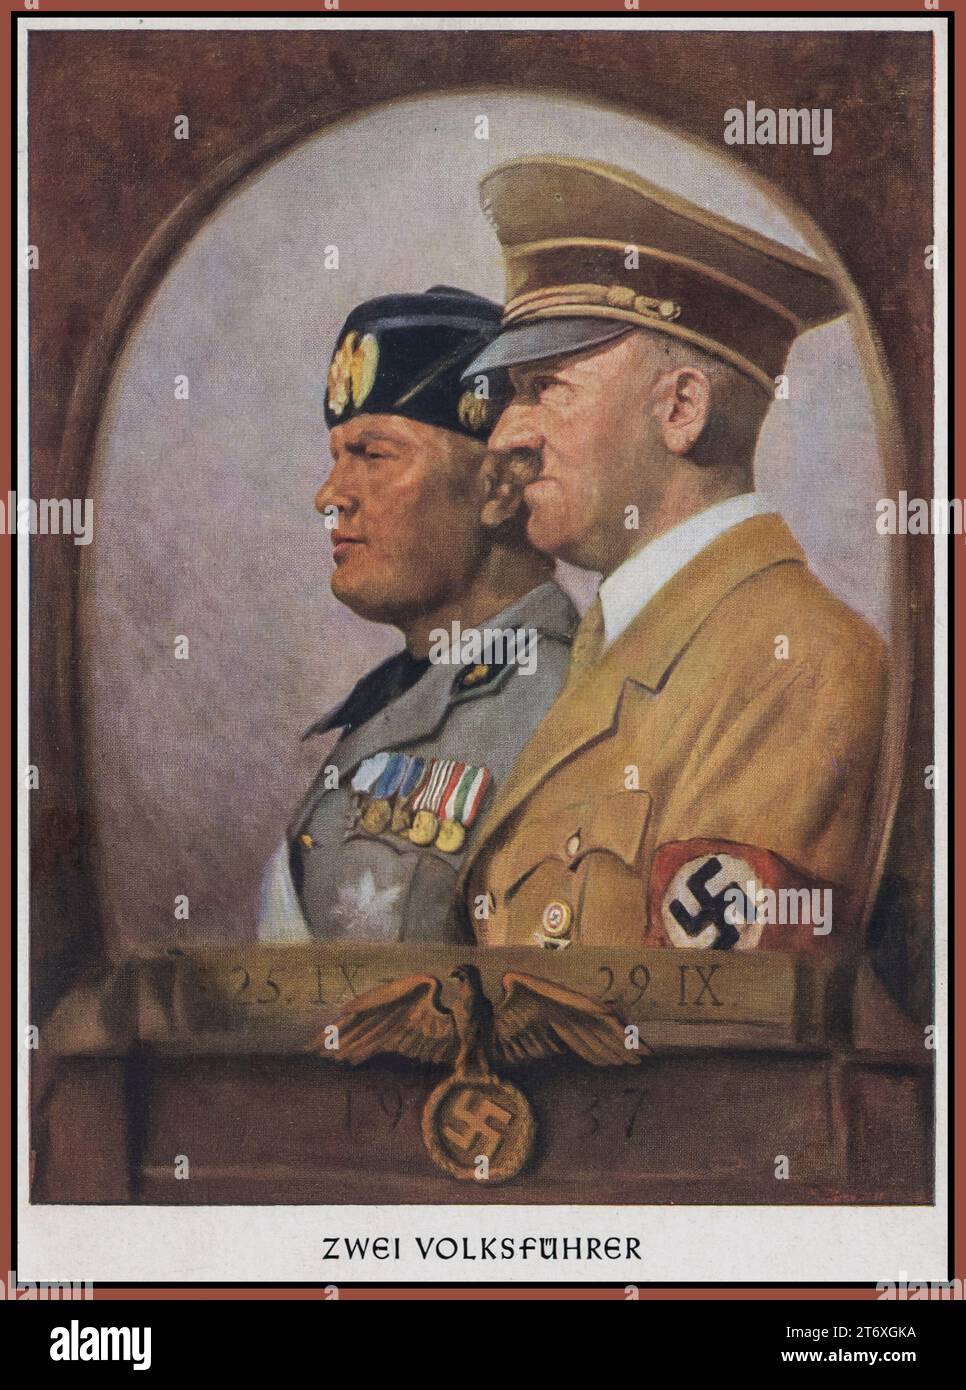 ZWEI FÜHRER Benito Mussolini (faschistischer Führer von Italien) und Adolf Hitler (Führer und Führer von Nazi-Deutschland) 1937 Propagandakarte Plakat Illustration Nazi-Deutschland. ' ZWEI VOLKSFUHRER' Stockfoto